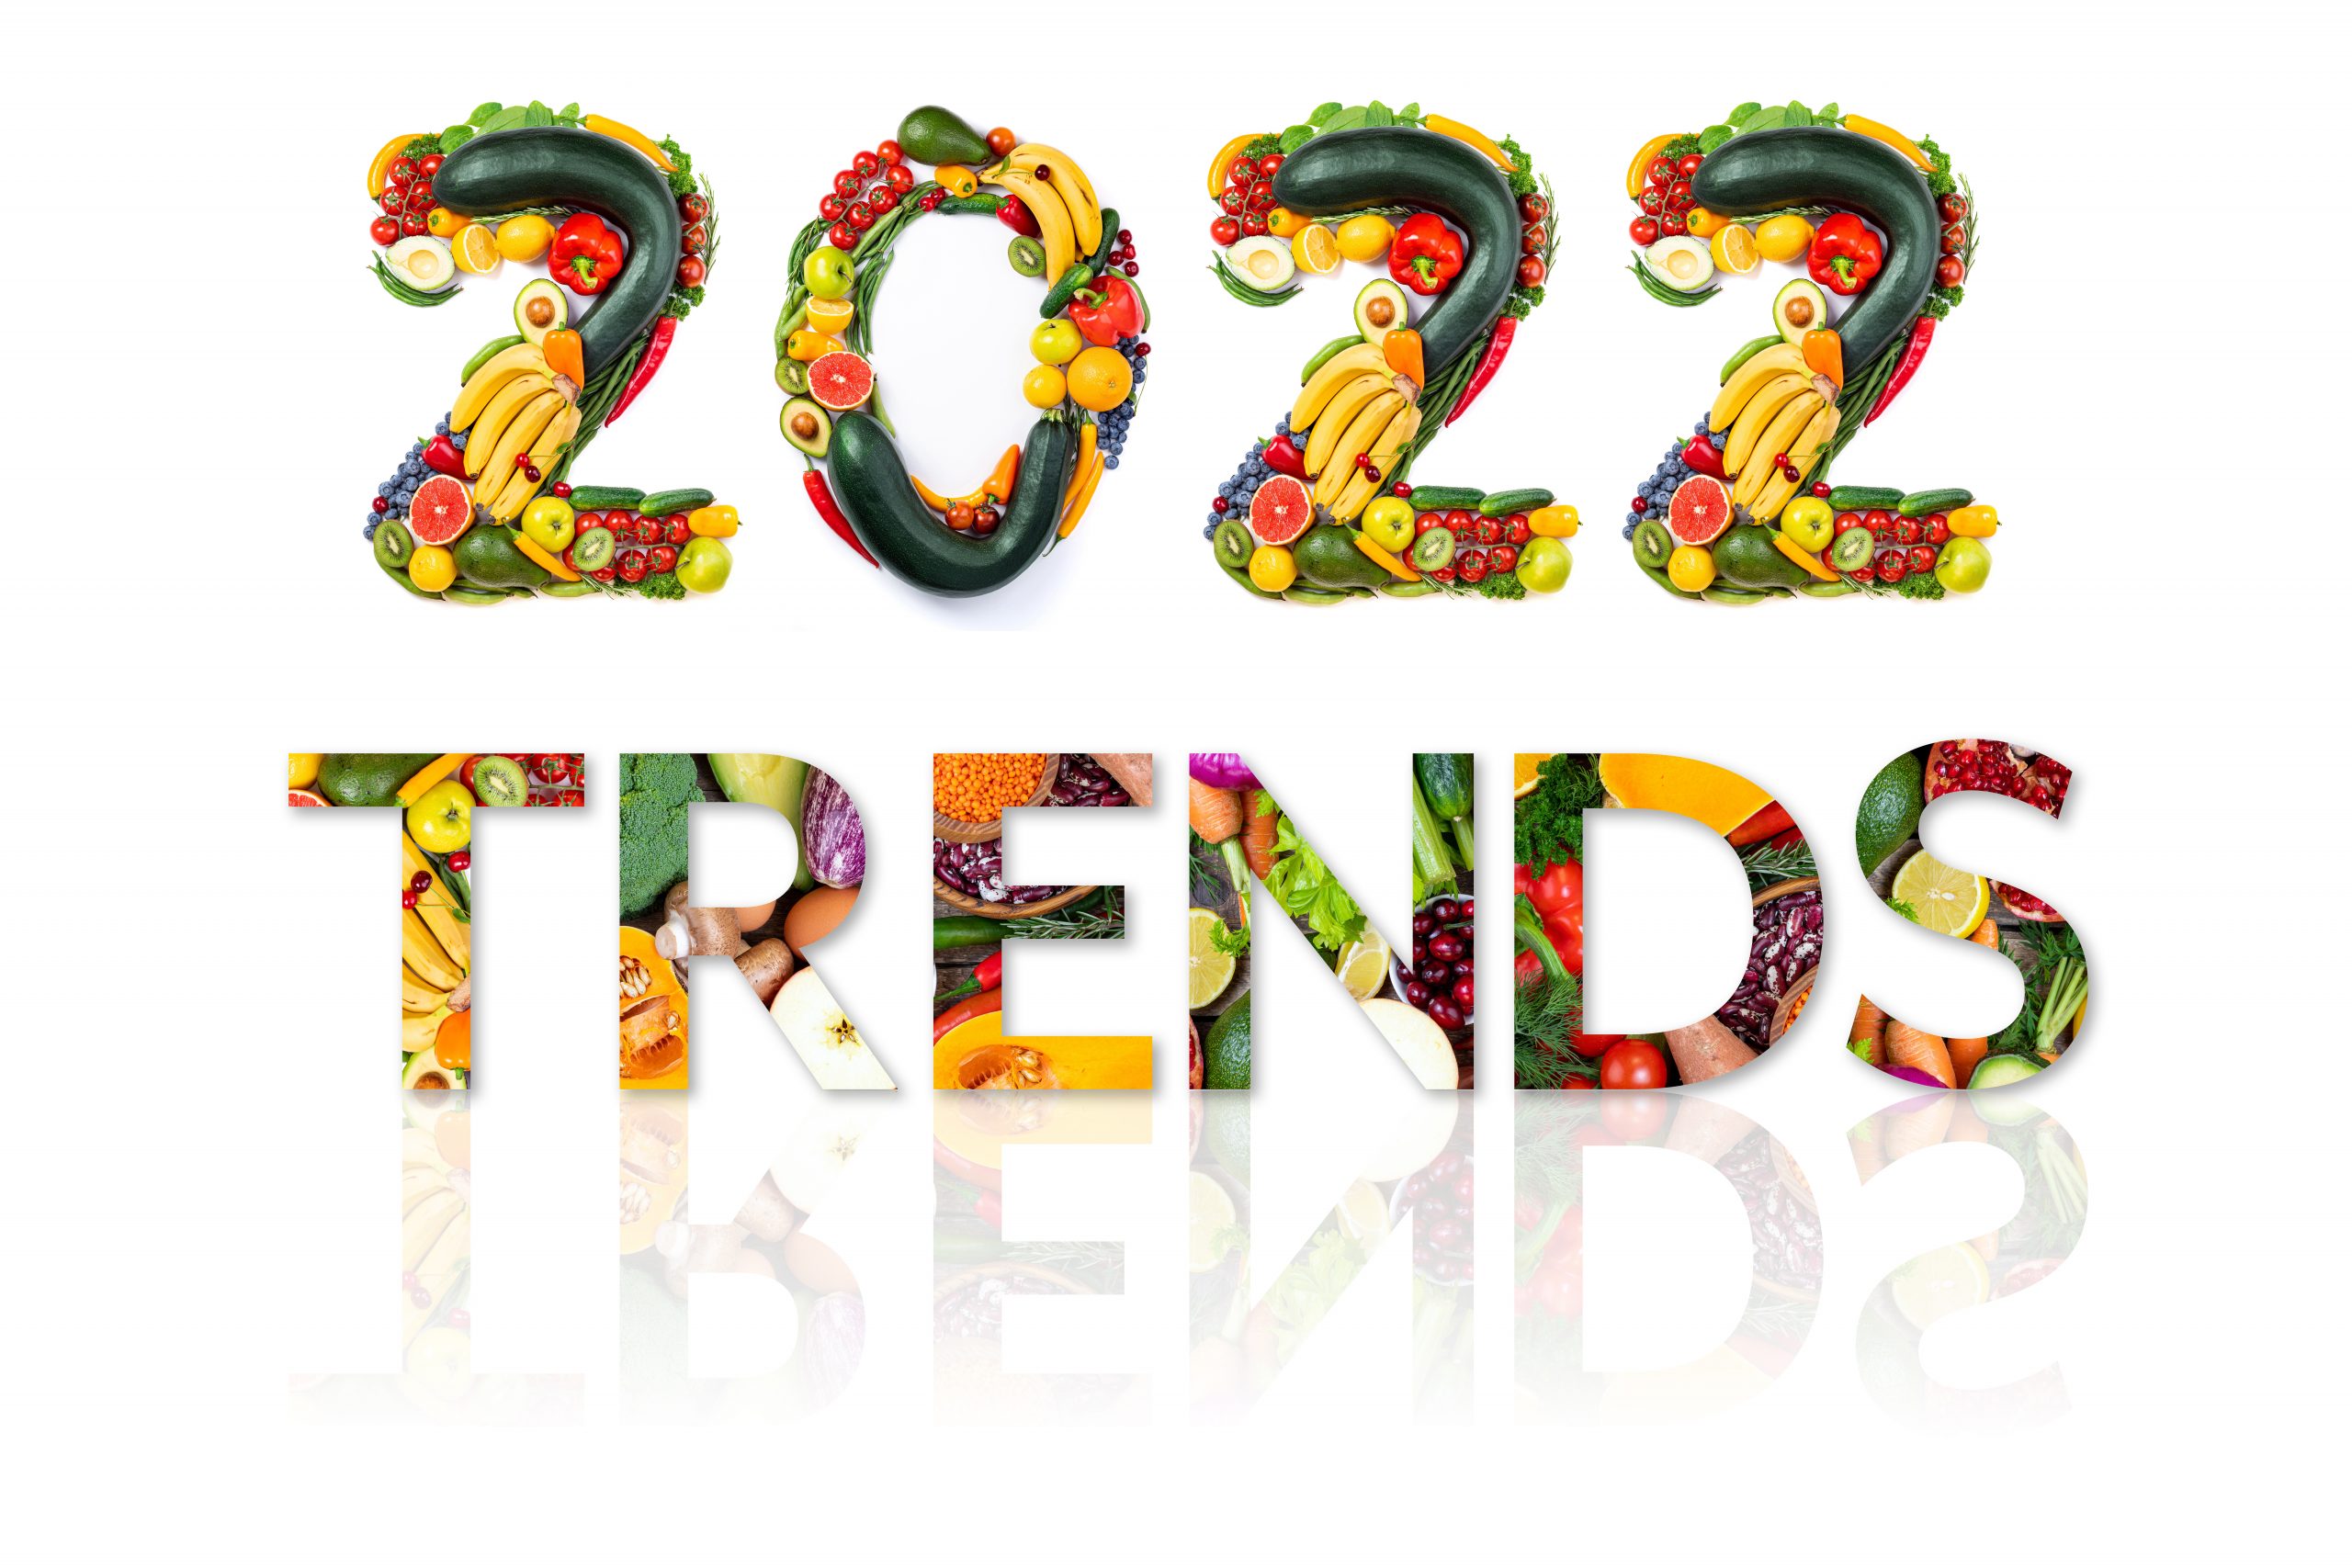 2022 food trends